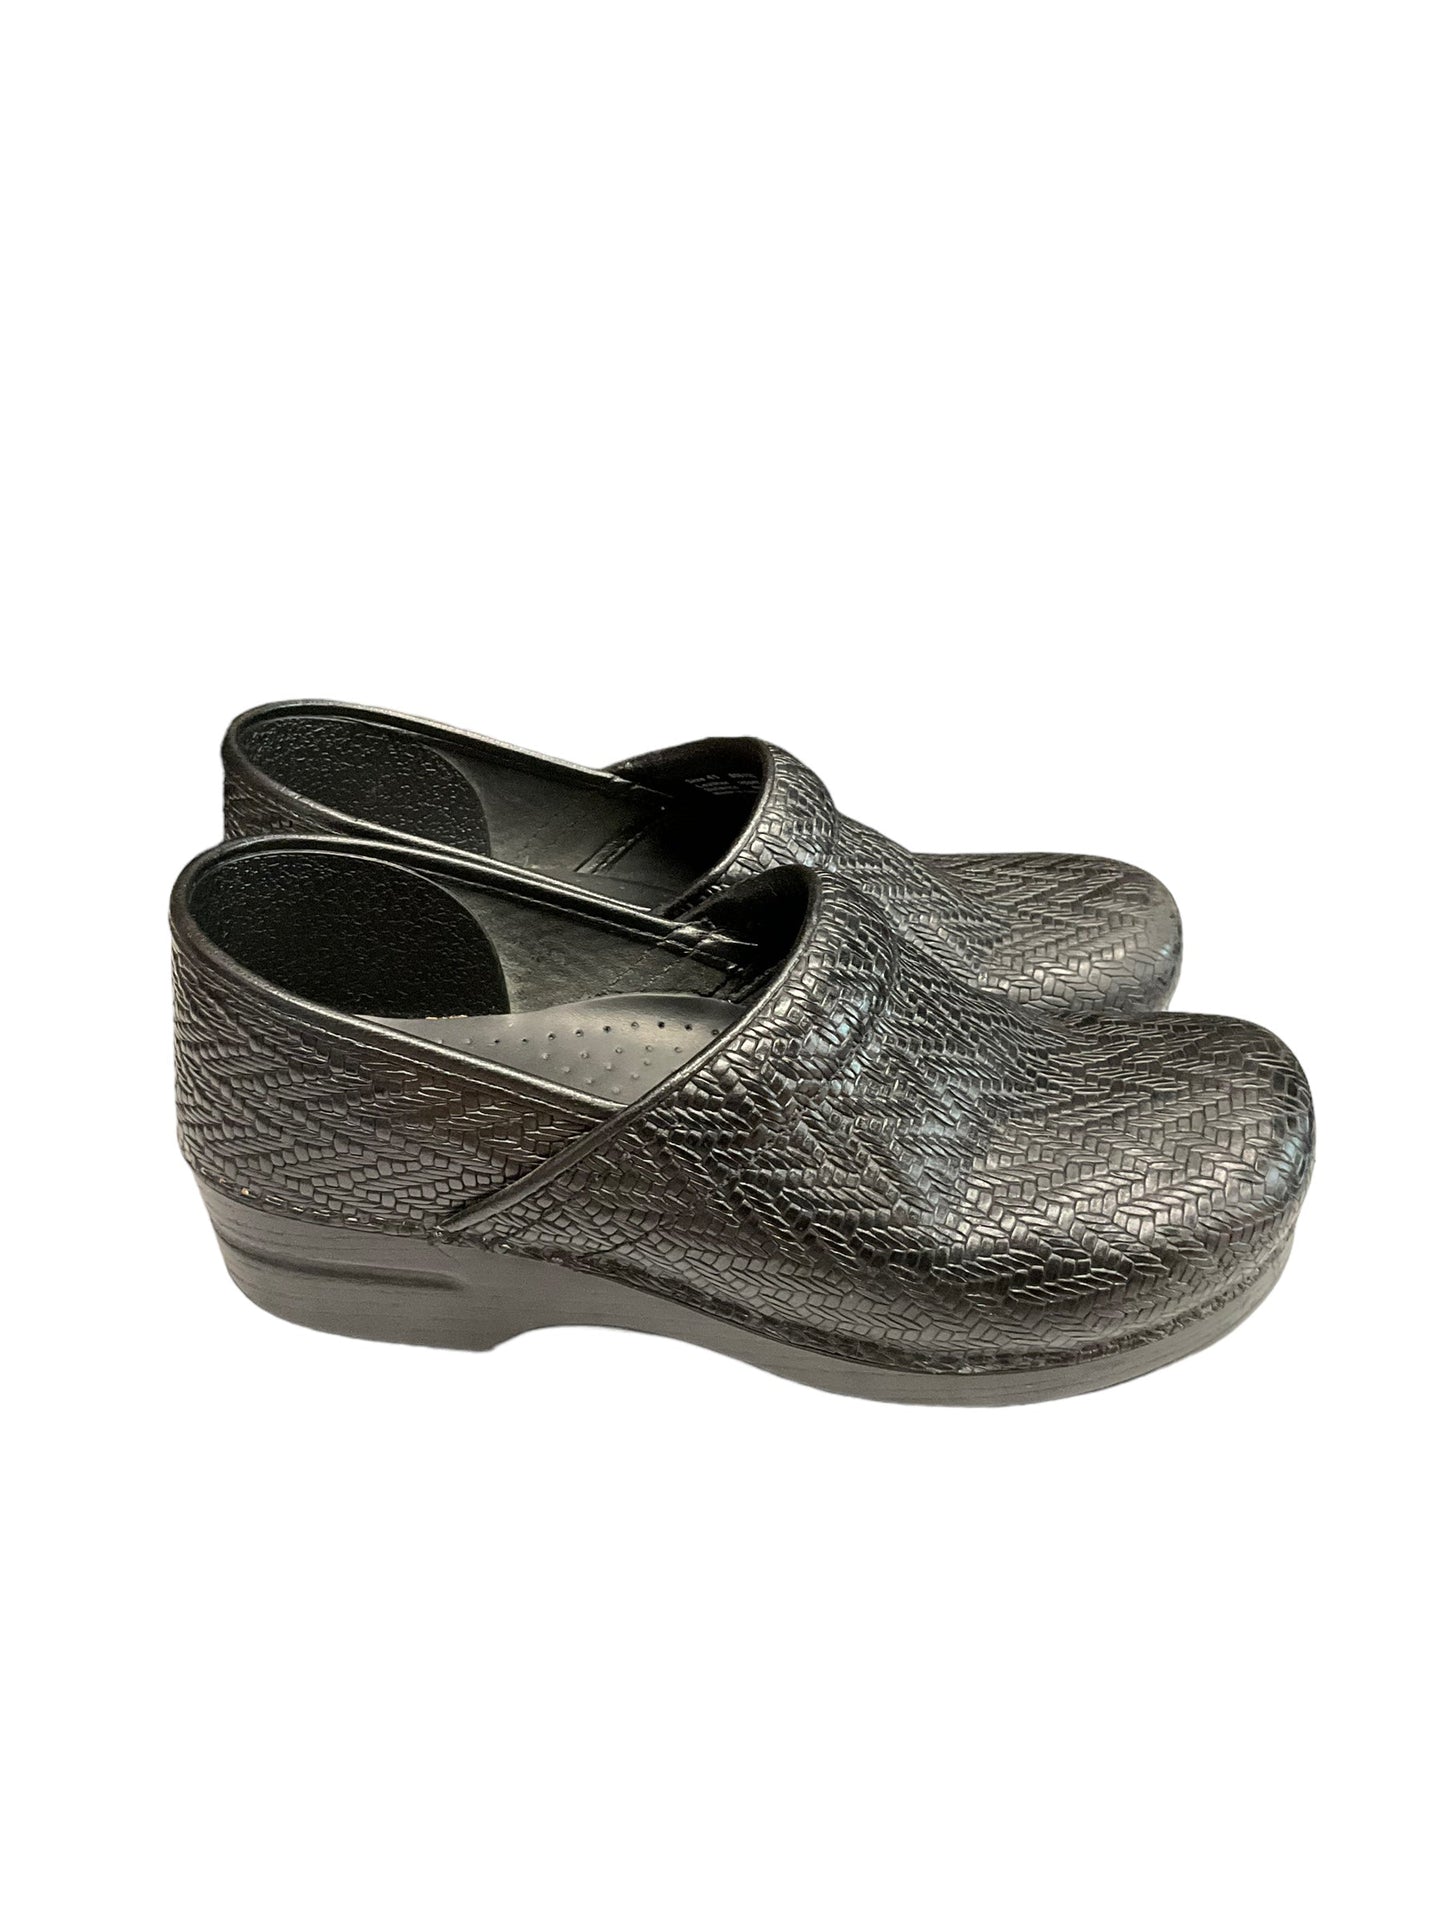 Shoes Heels Block By Dansko  Size: 10